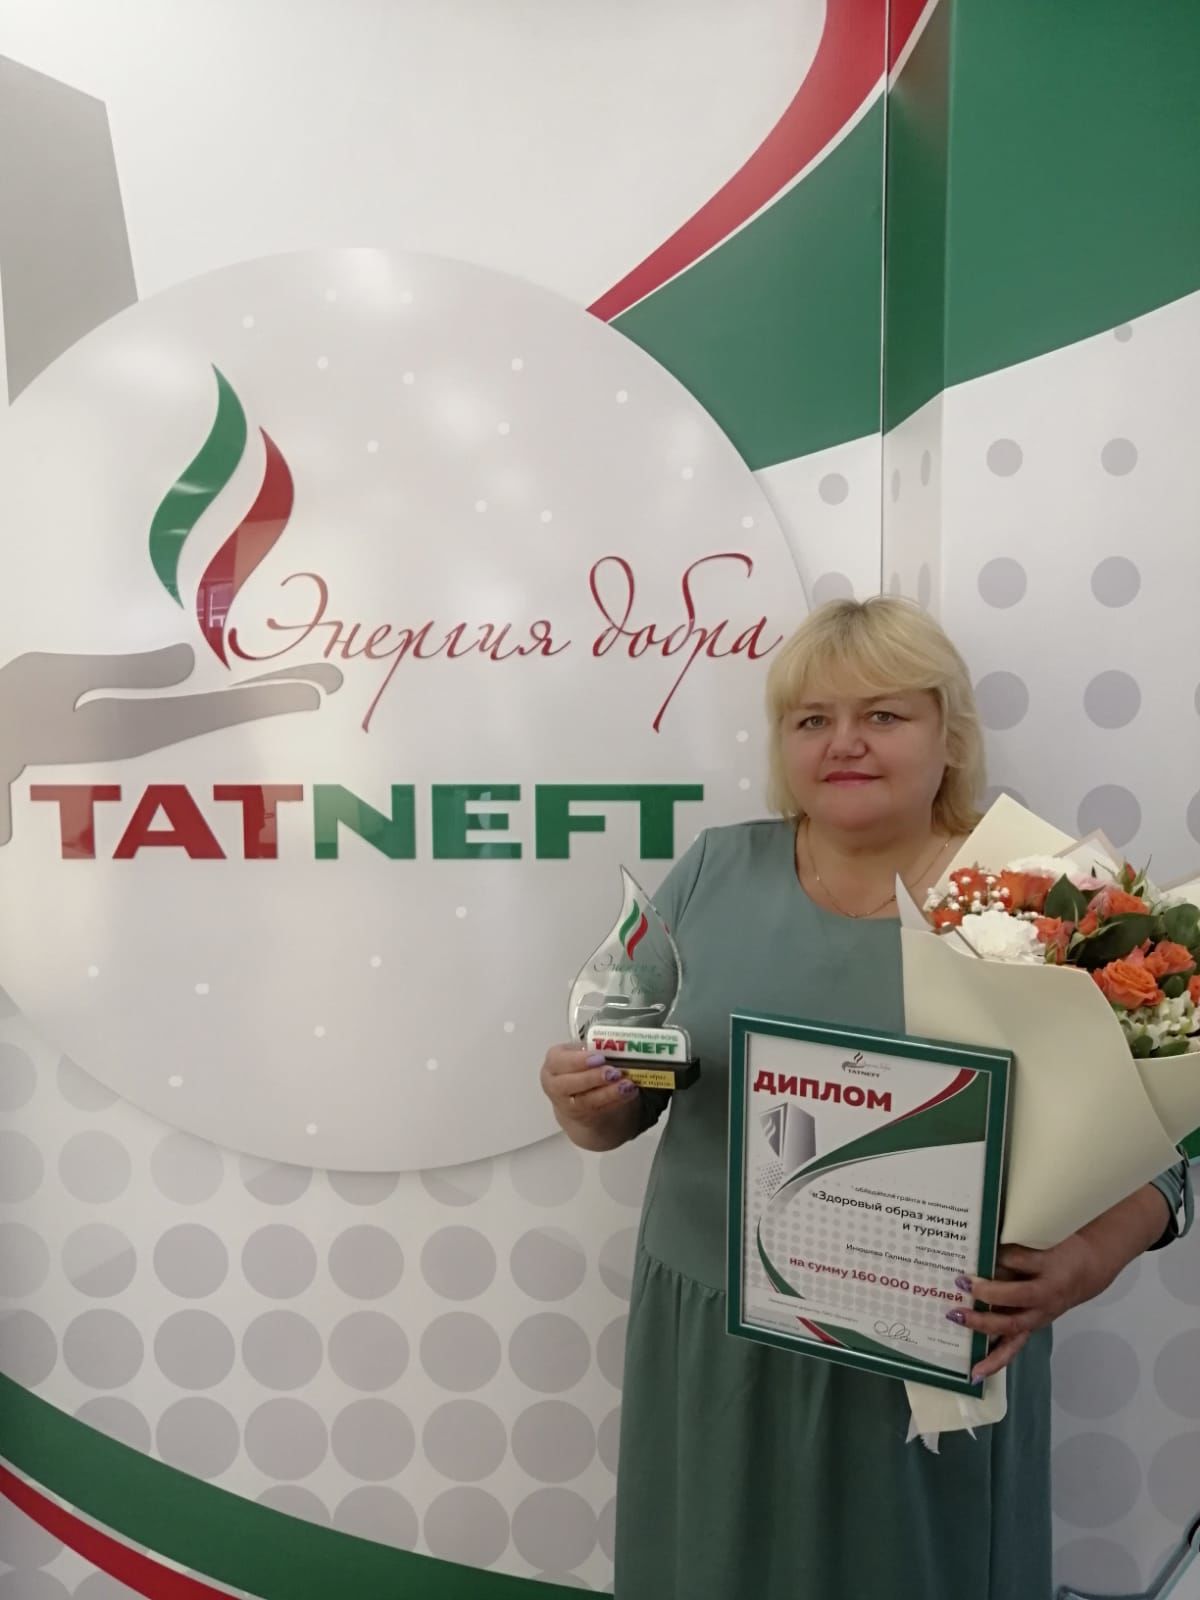 Елабужанка стала победителем грантового конкурса "Энергия добра"